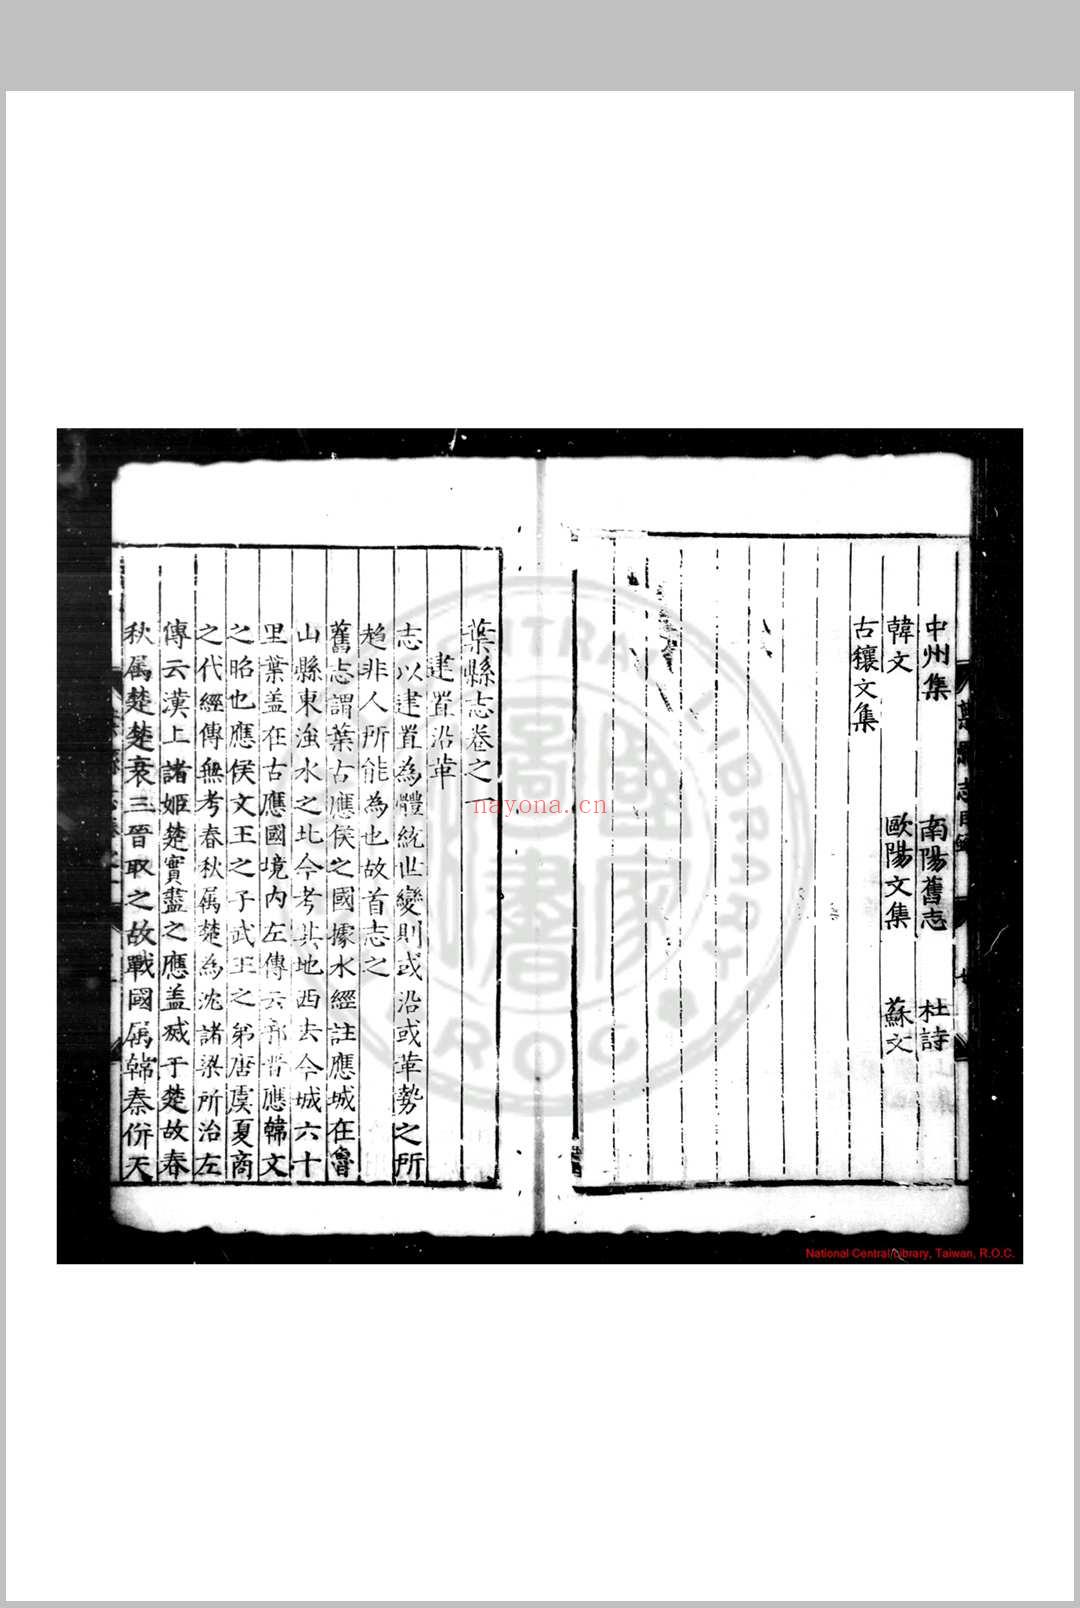 叶县志 (明)牛凤纂修 明嘉靖壬寅(二十一年, 1542)刊本